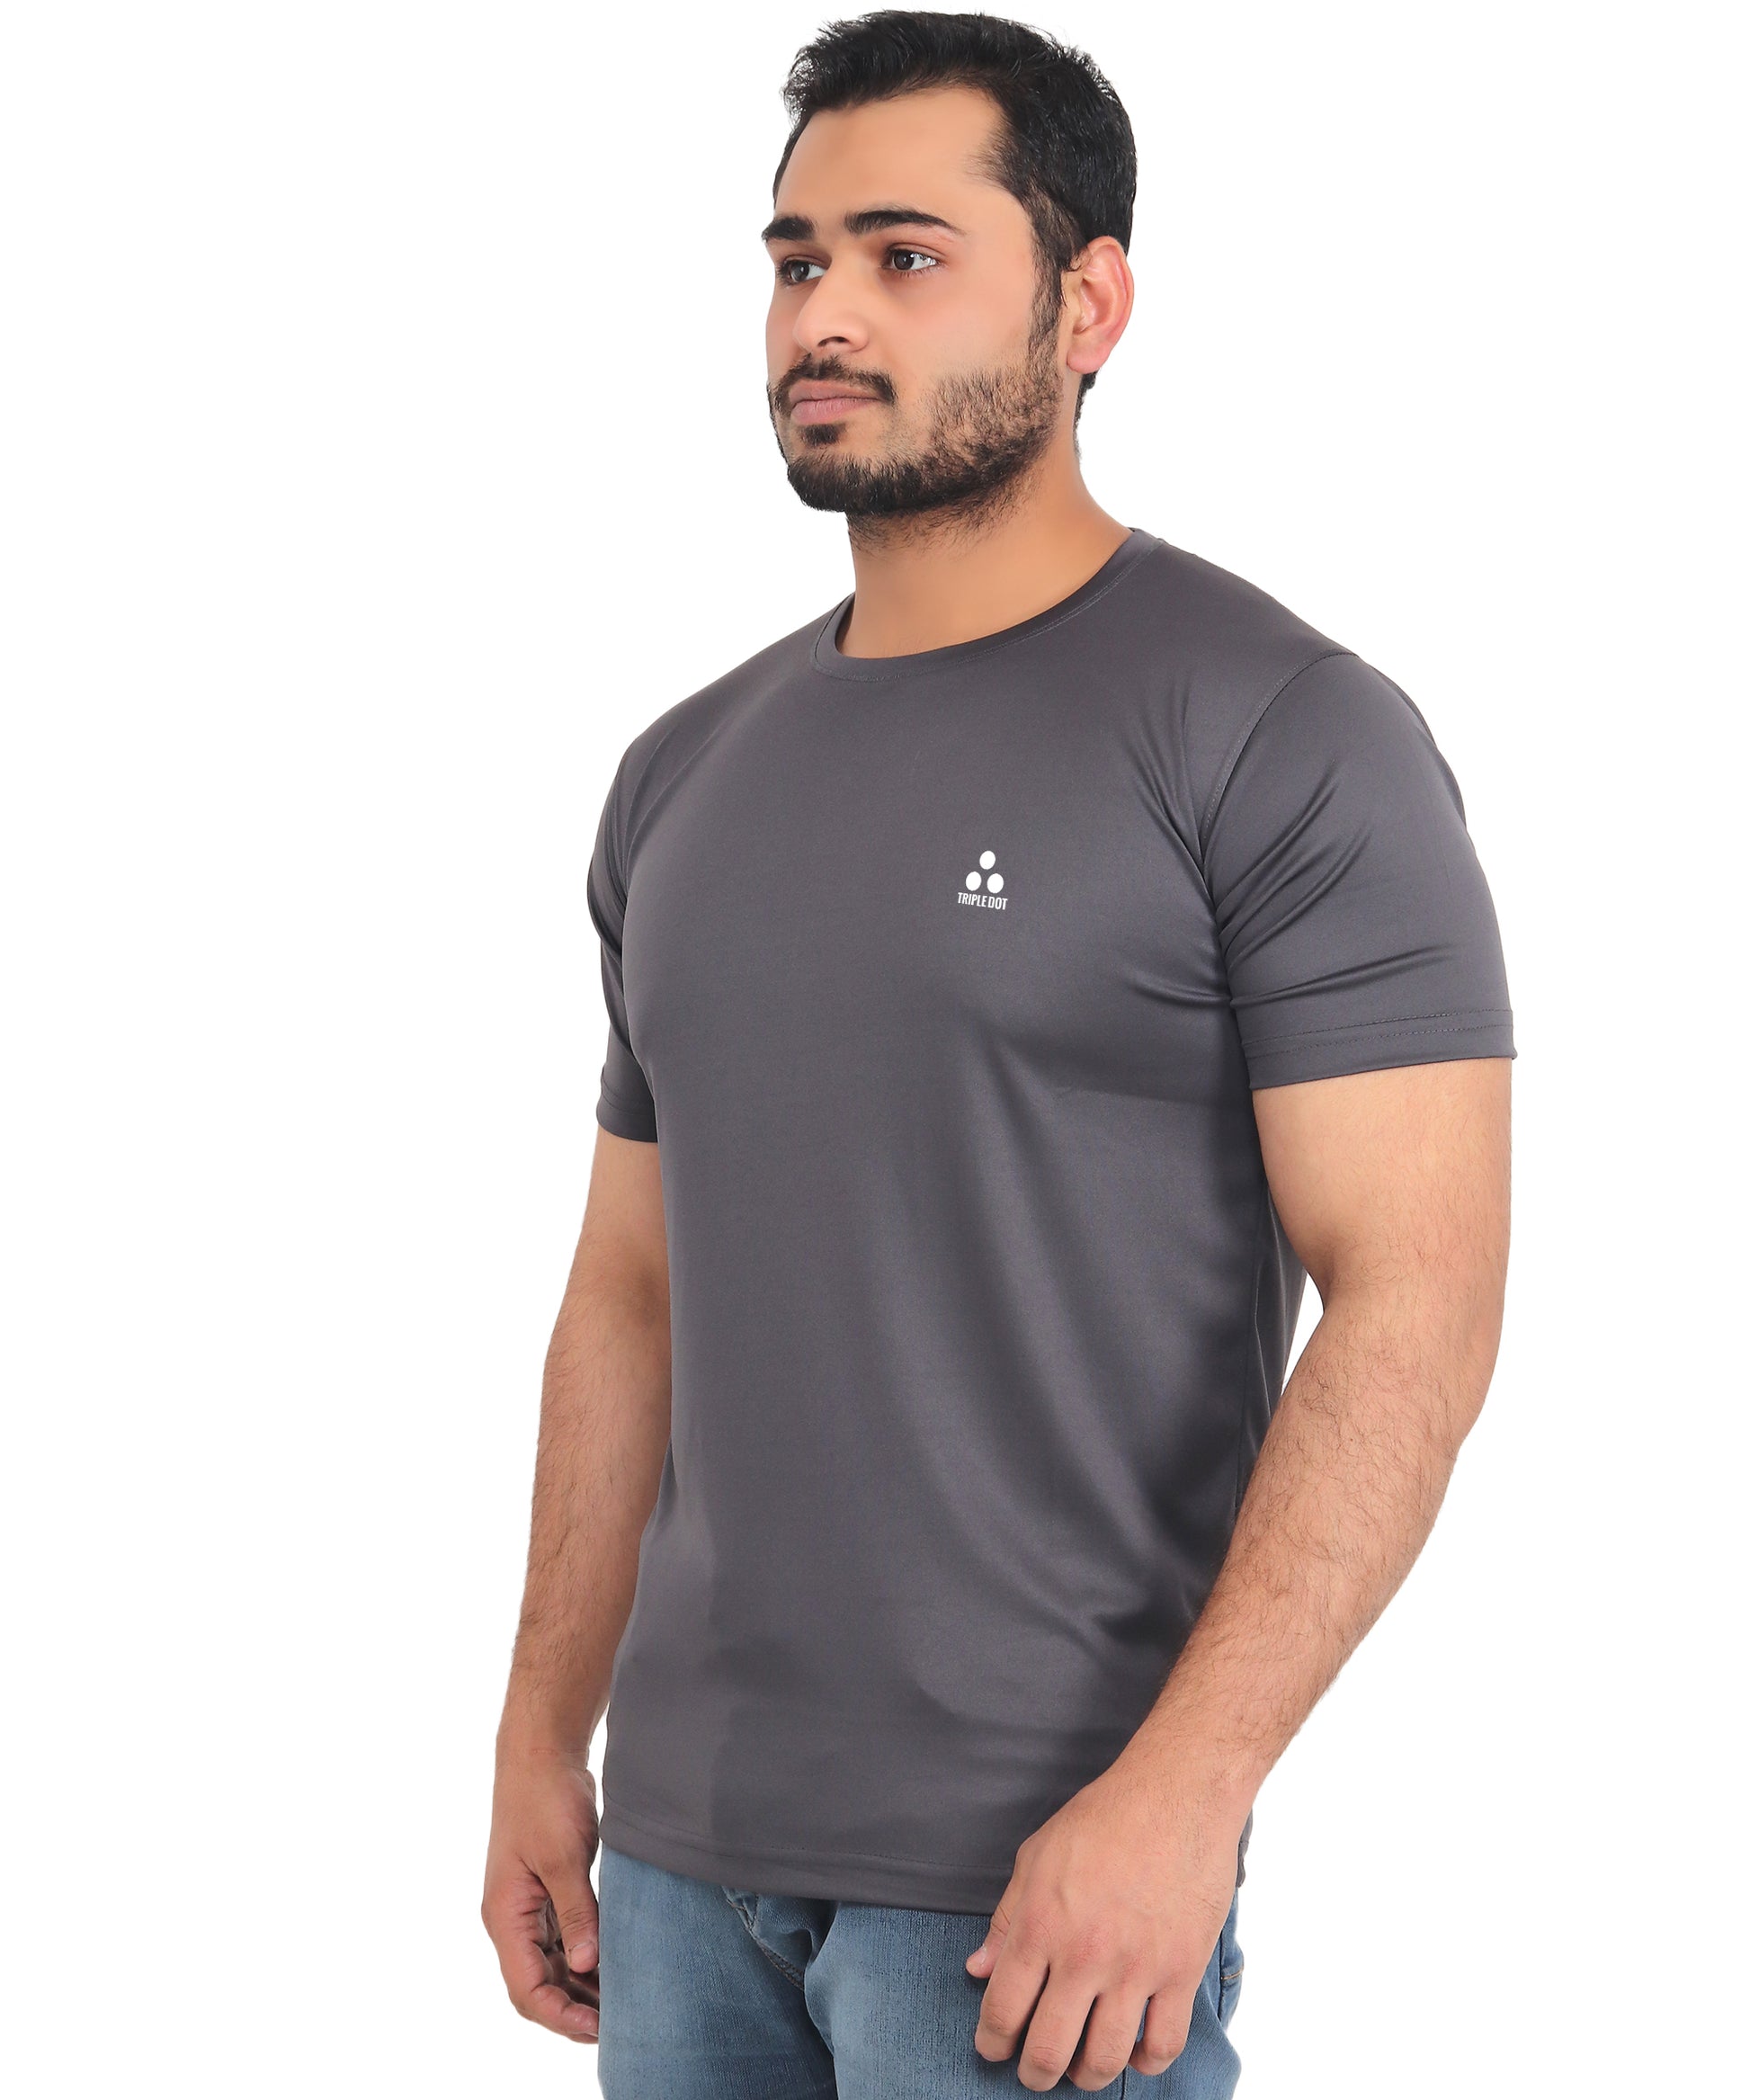 Triple Dot Dark Grey Polyester Round Neck Sport T shirt for Men - Triple Dot Clothings